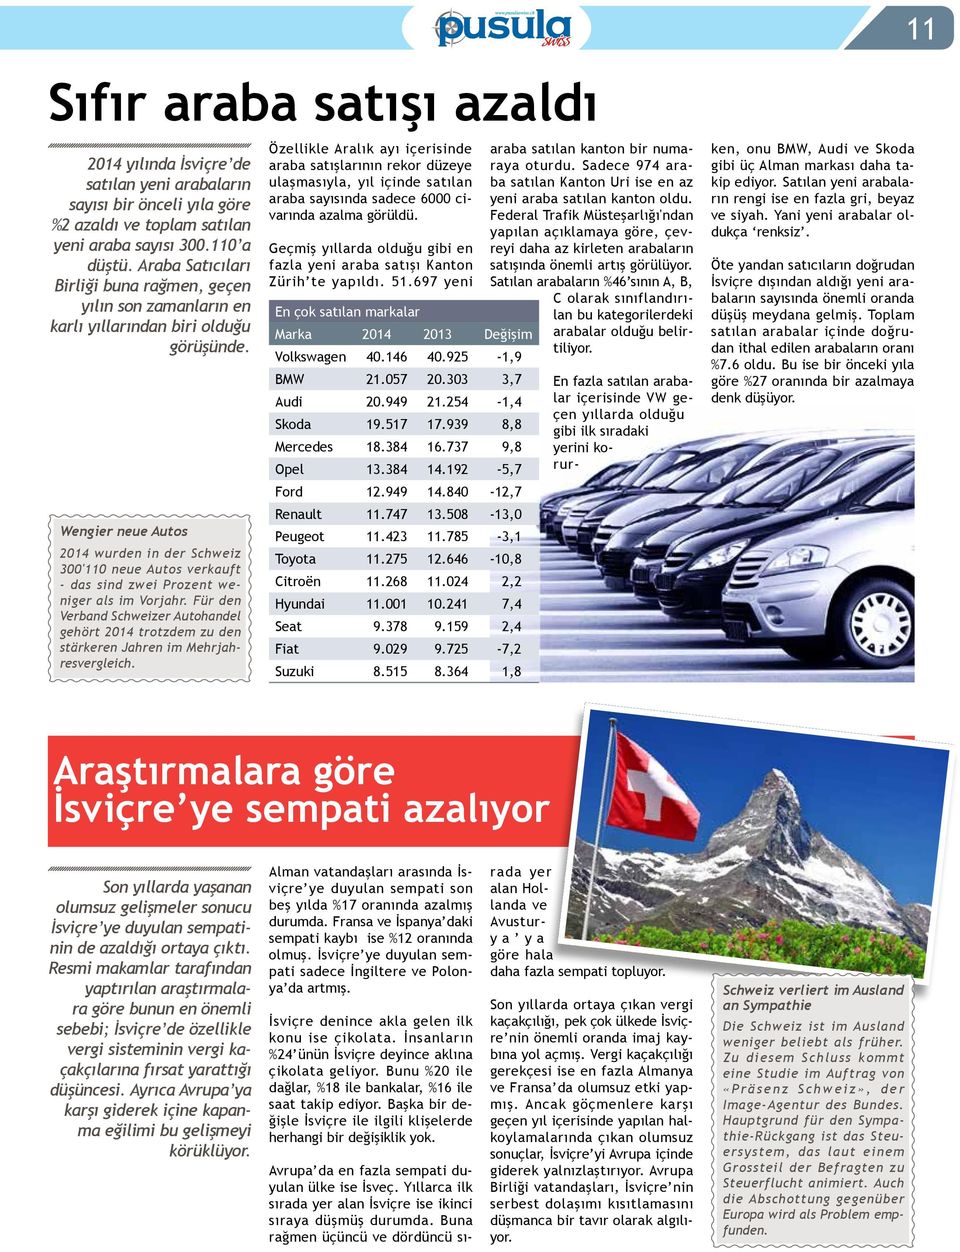 Wengier neue Autos 2014 wurden in der Schweiz 300'110 neue Autos verkauft - das sind zwei Prozent weniger als im Vorjahr.